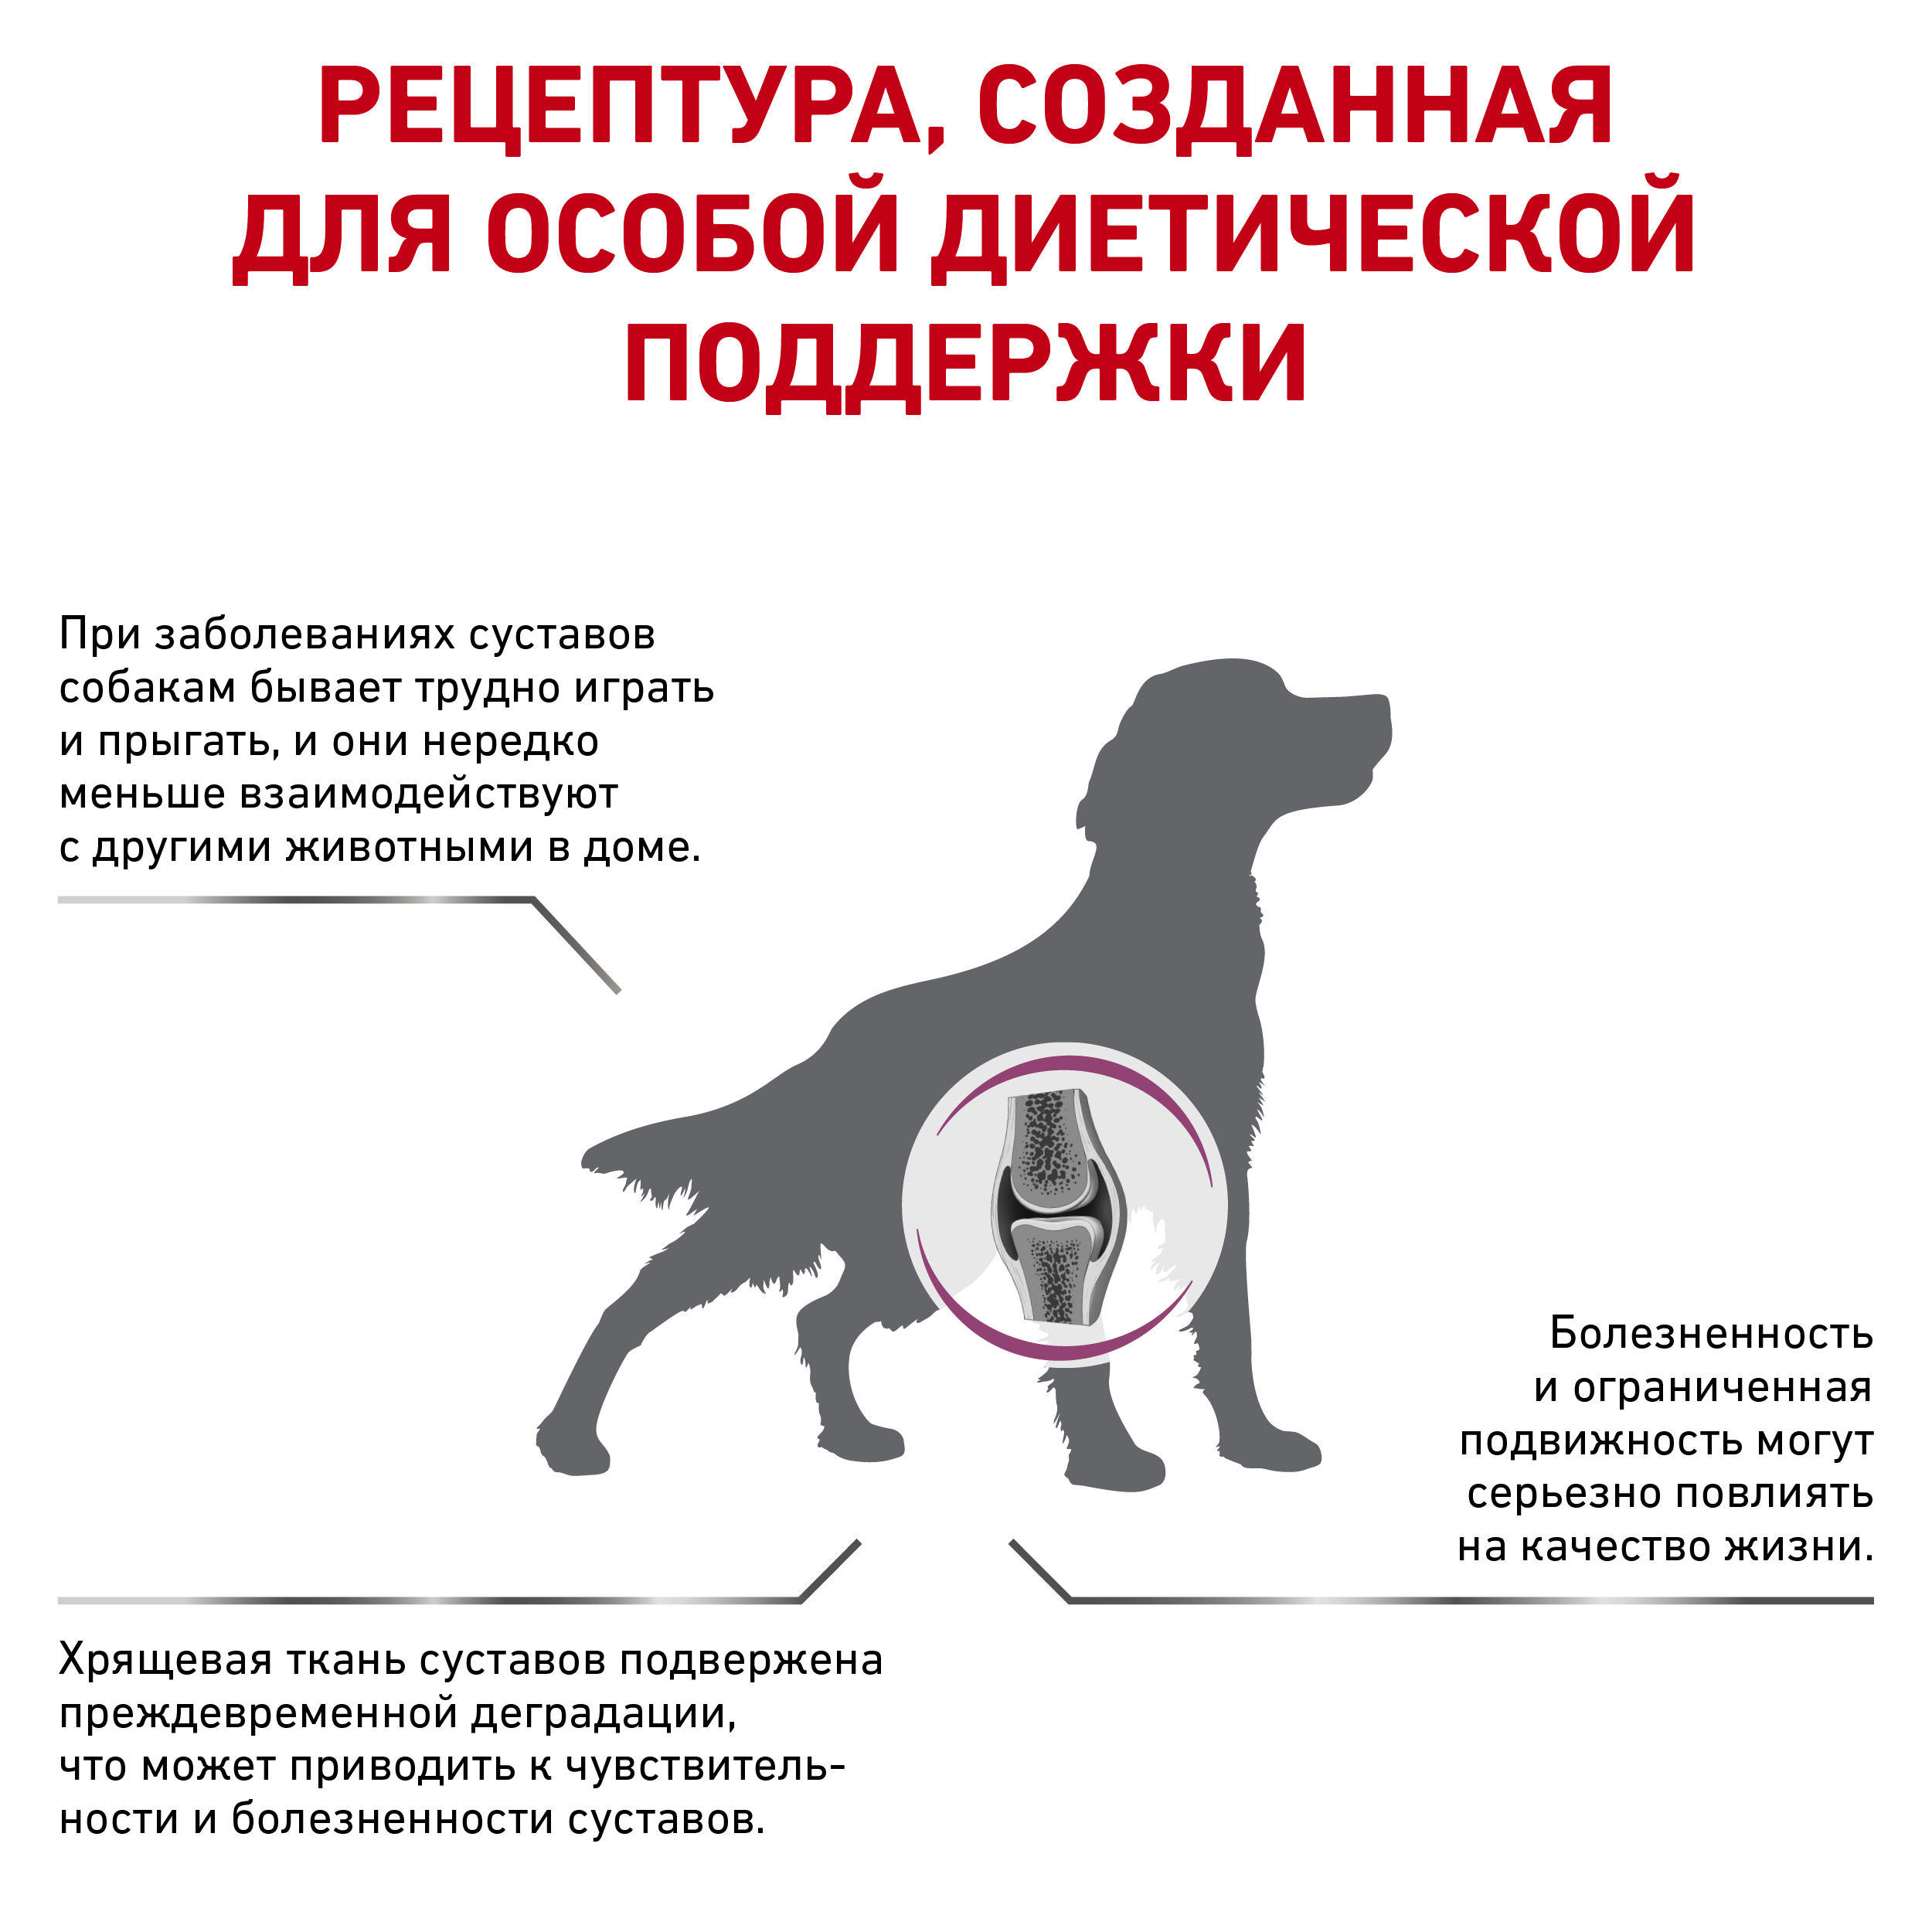 Ветеринарная диета для собак при заболеваниях oпорно-двигательного aппарата, Mobility Canin